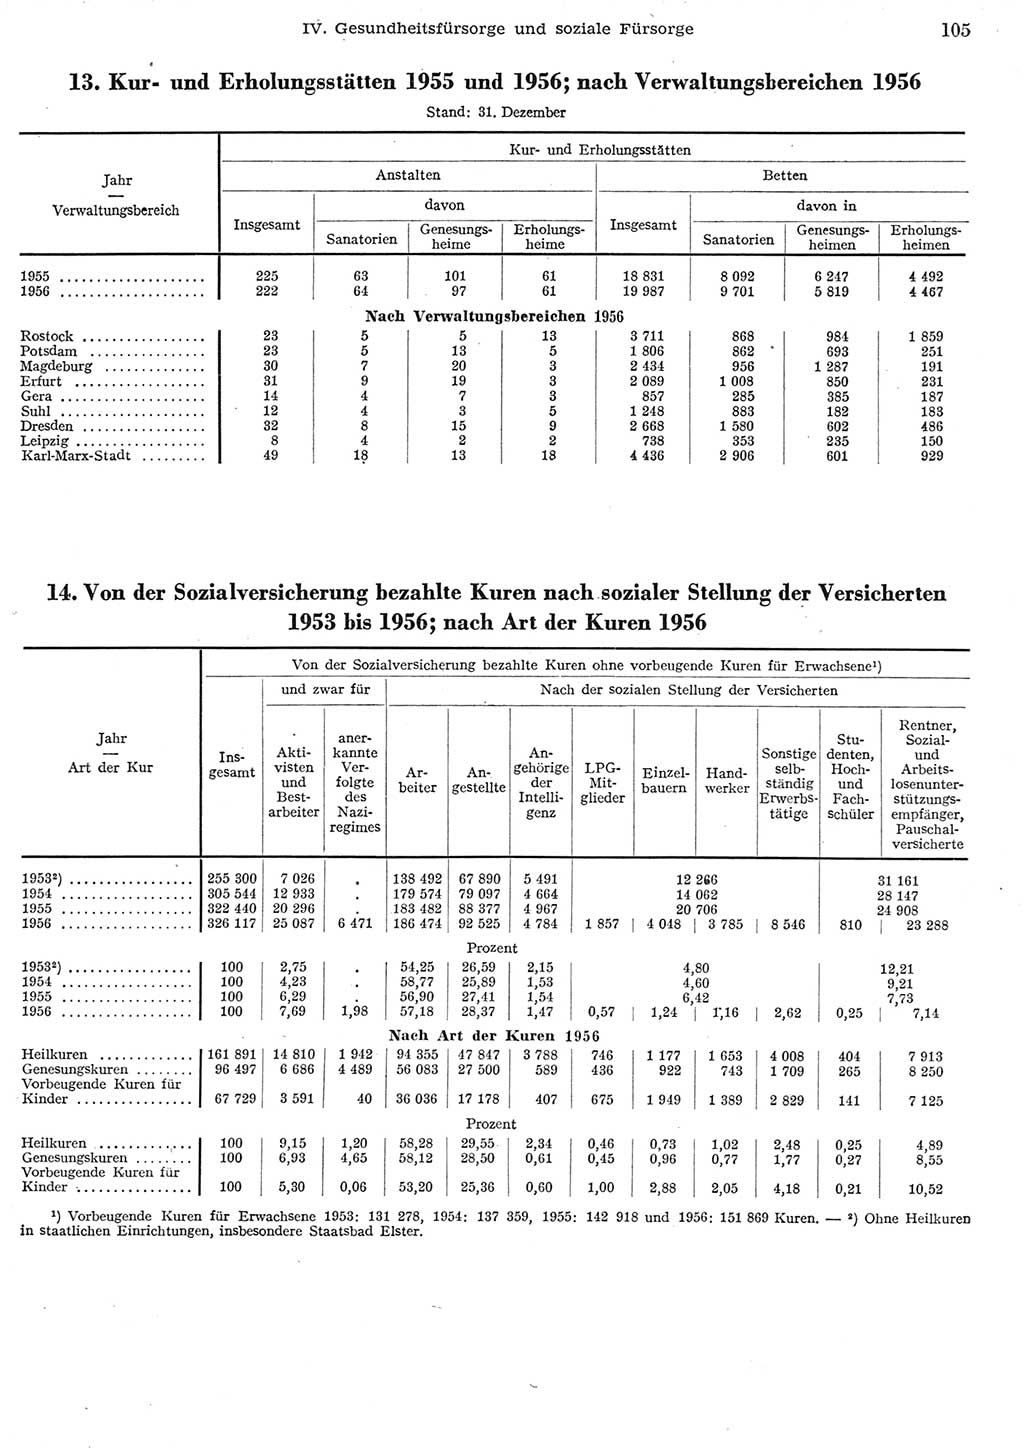 Statistisches Jahrbuch der Deutschen Demokratischen Republik (DDR) 1956, Seite 105 (Stat. Jb. DDR 1956, S. 105)